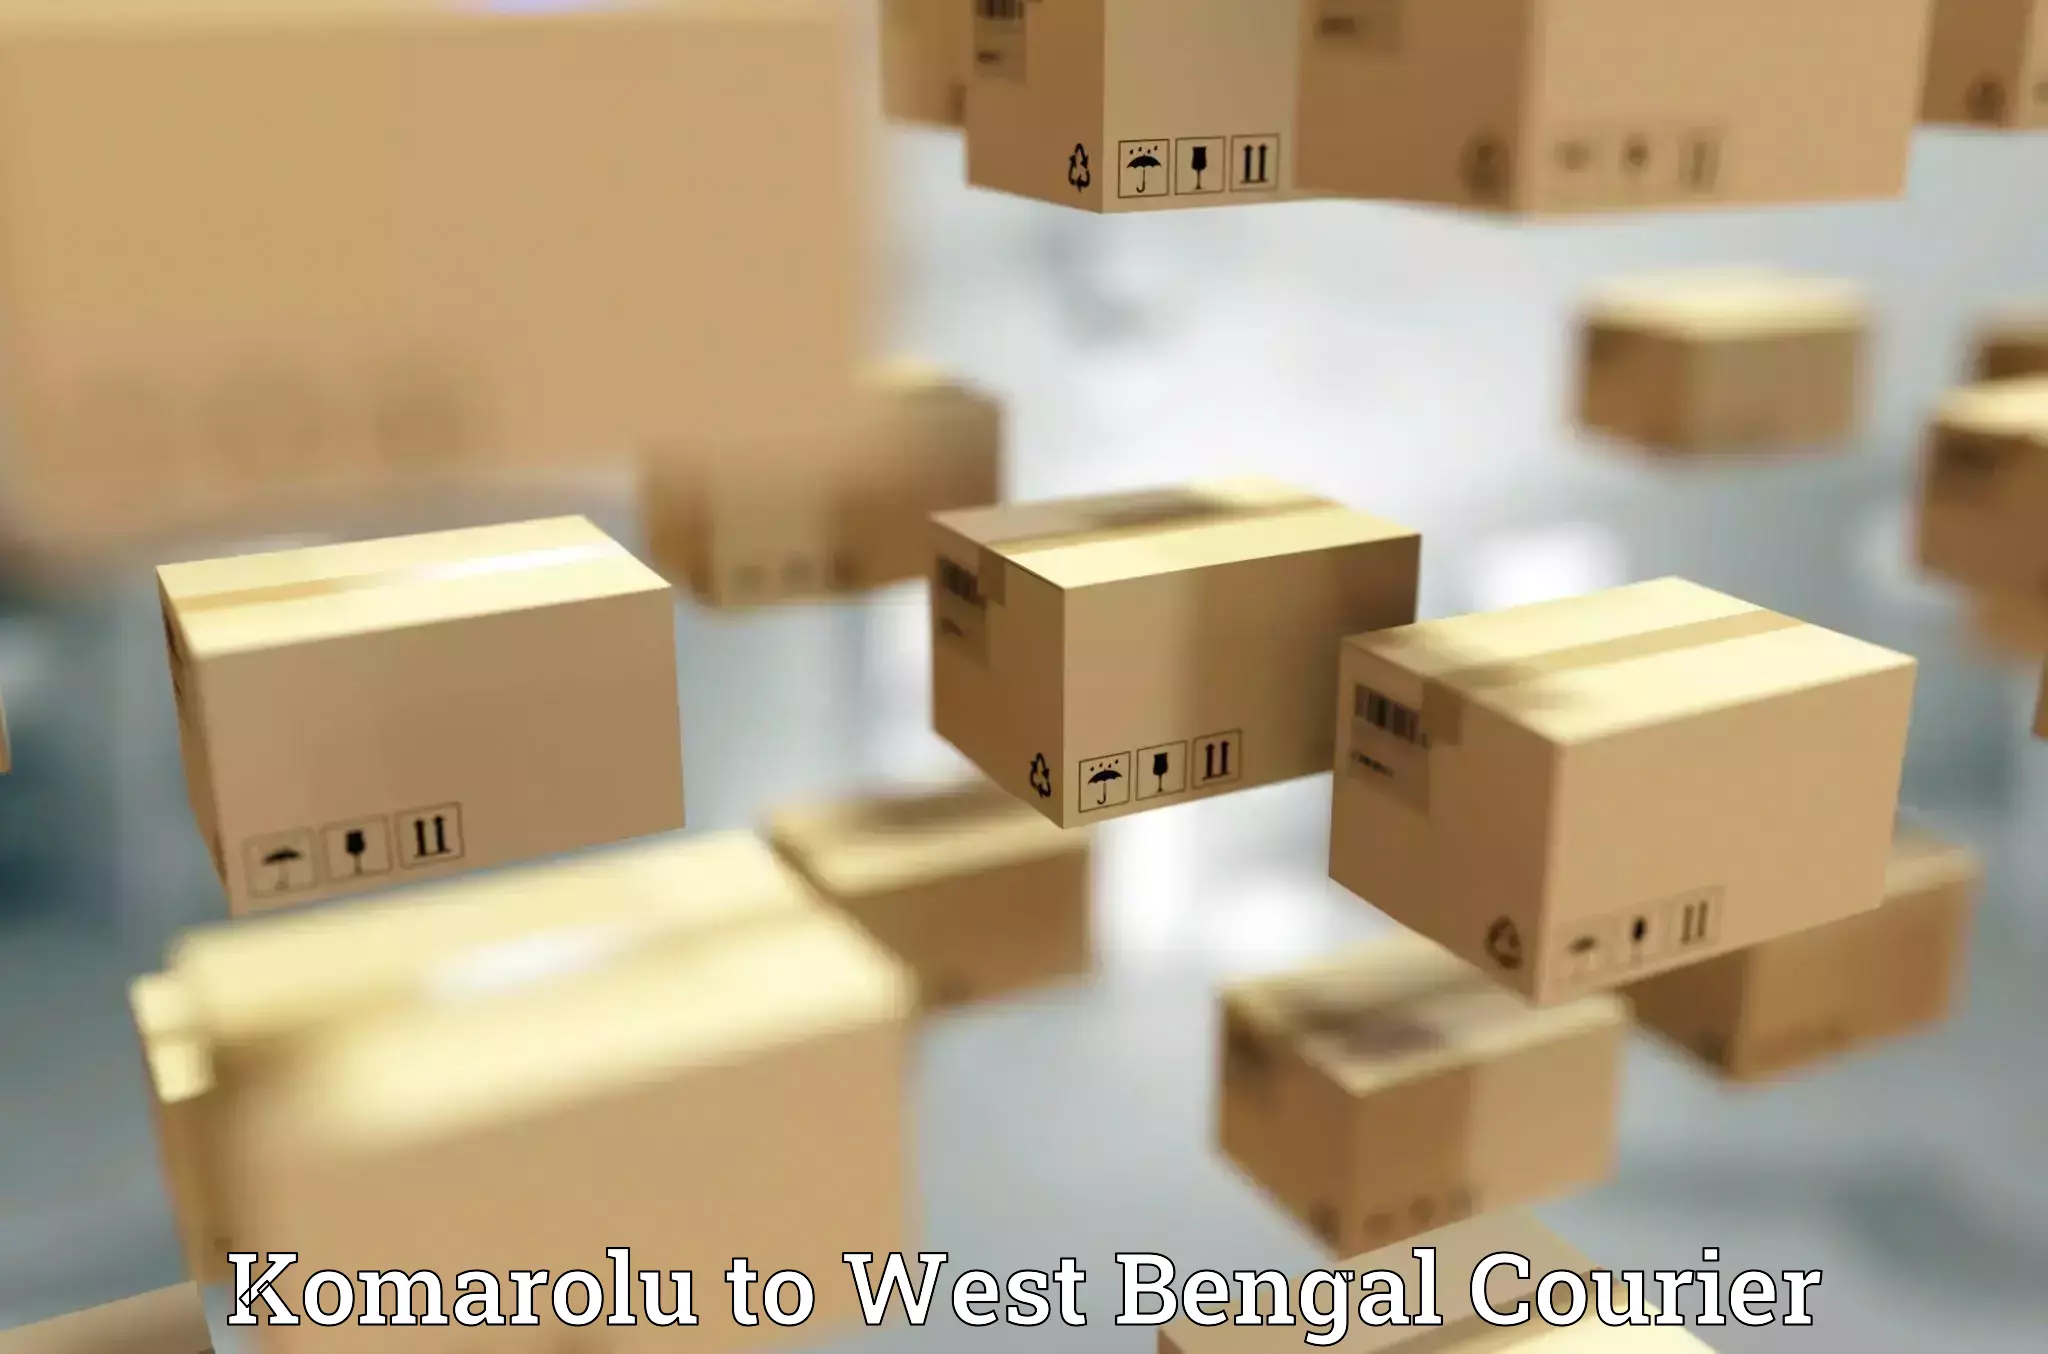 Courier services in Komarolu to Kolkata Port